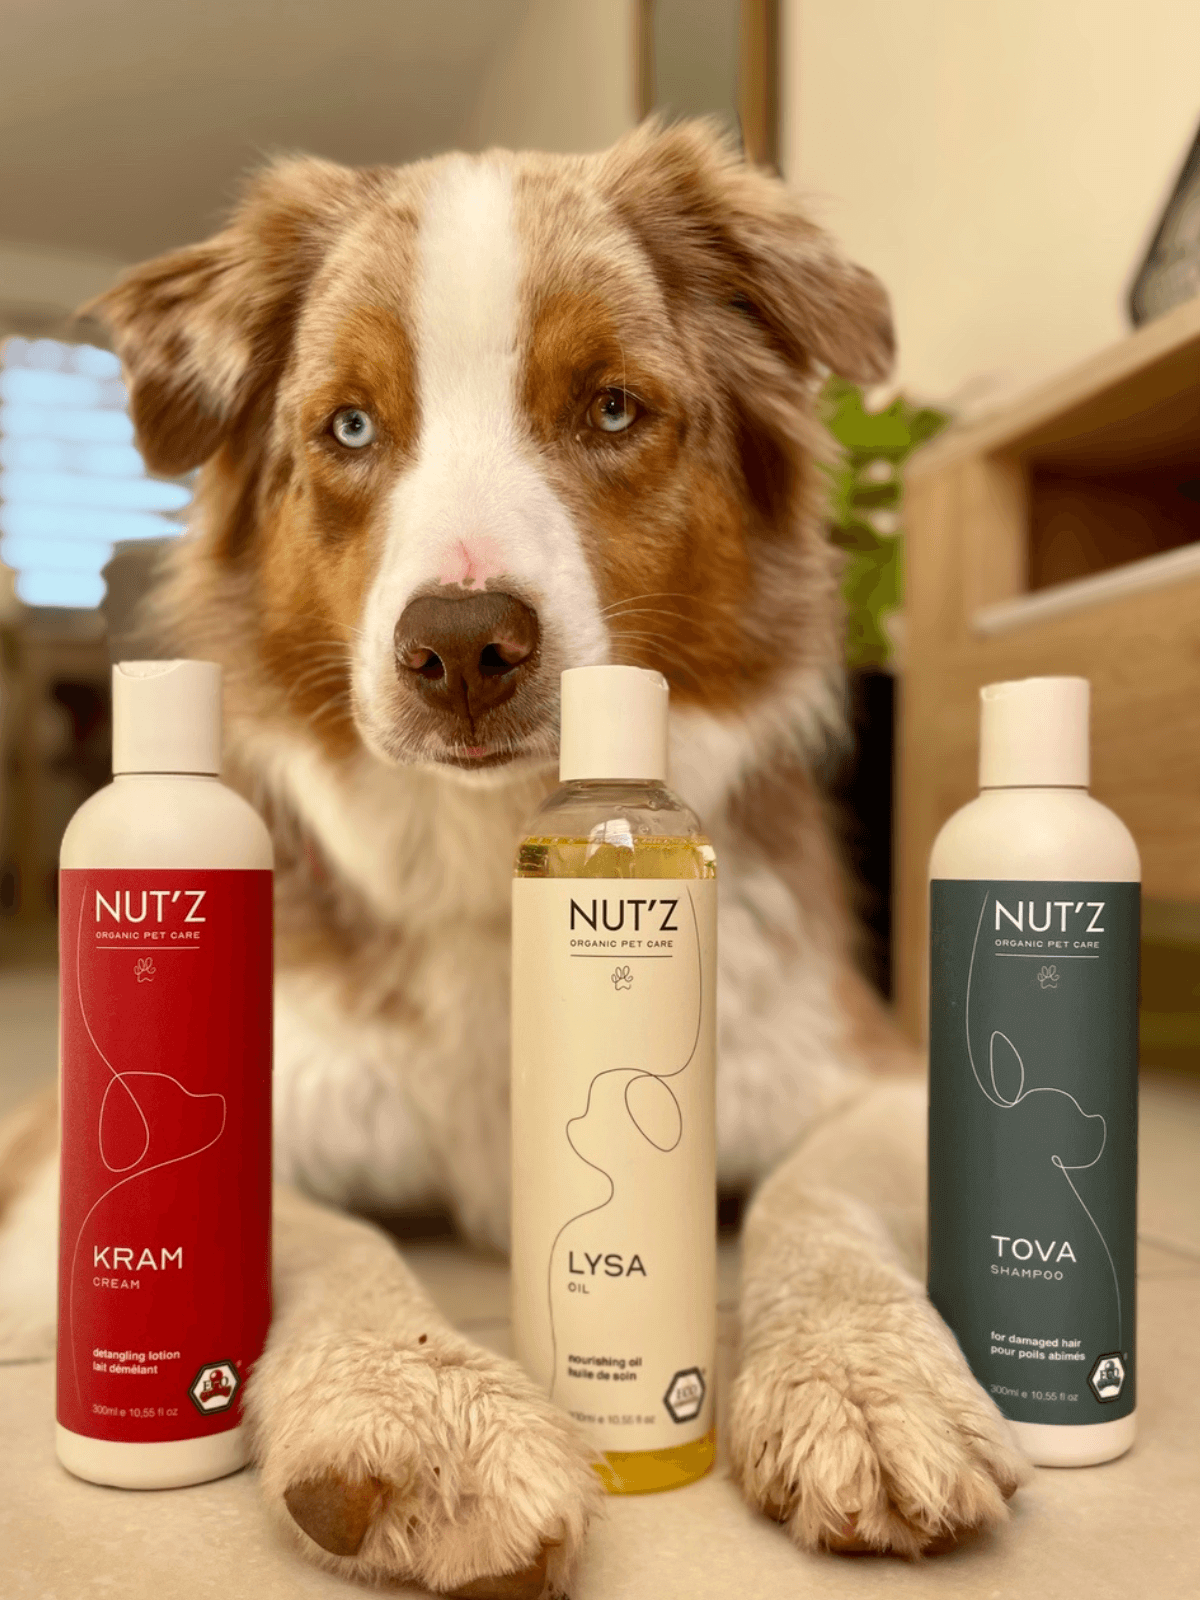 Comment lire une étiquette produit avec Nut'z Organic Pet Care ?